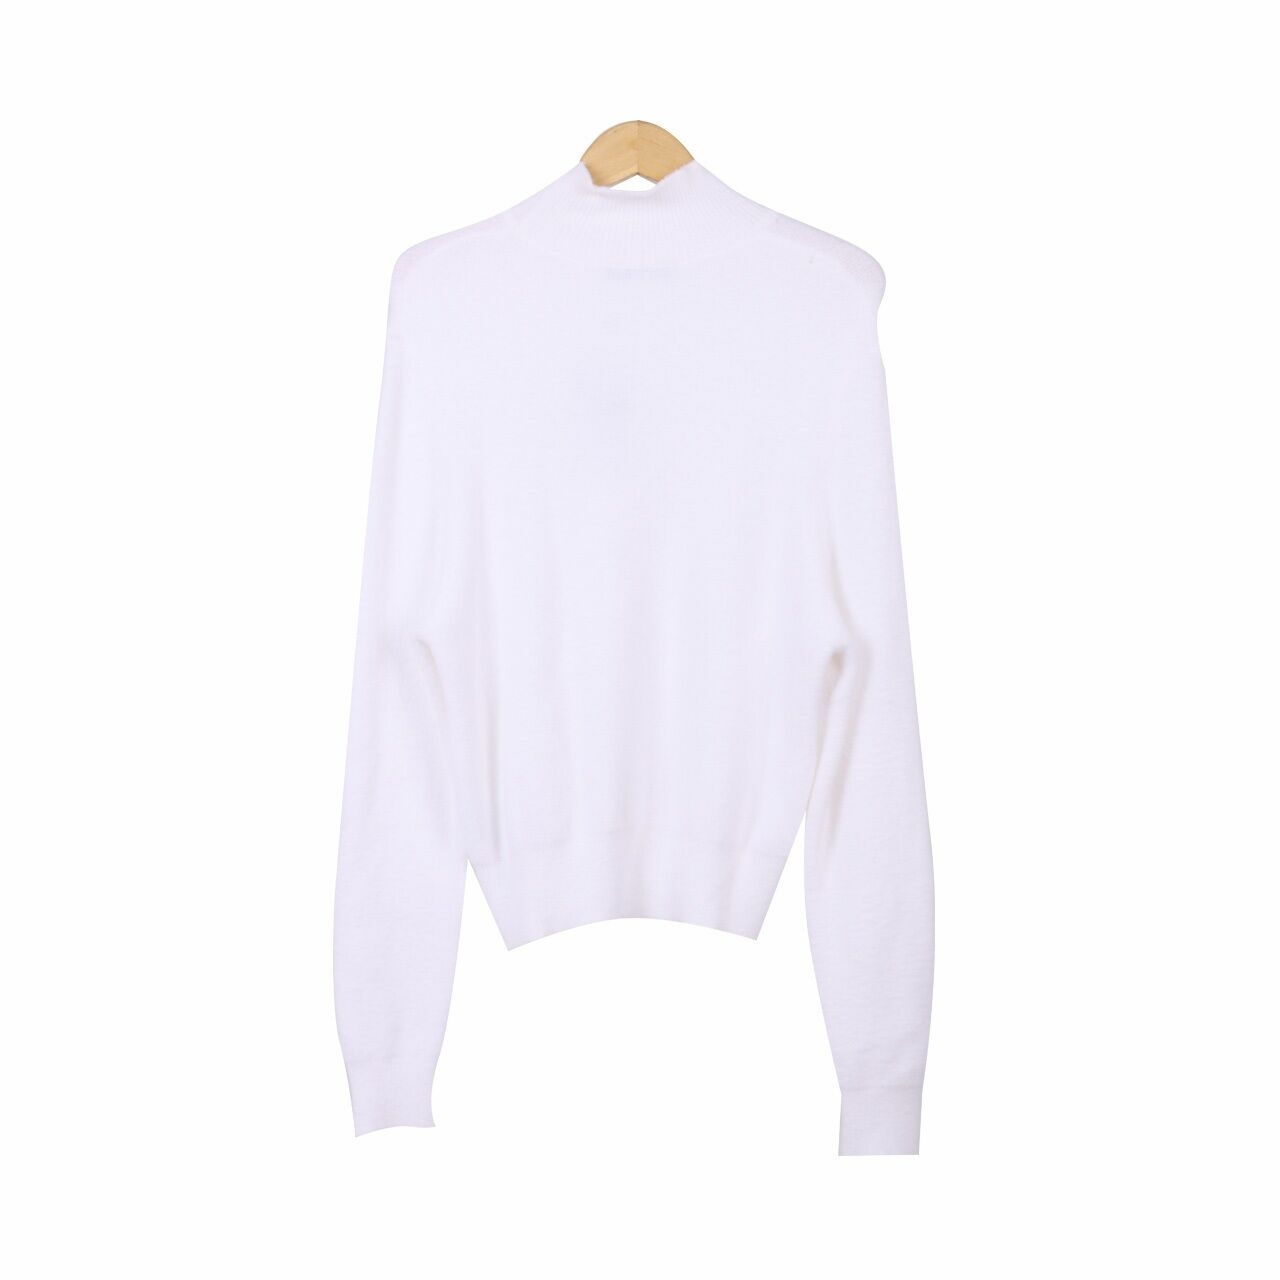 Zara White Sweatshirt